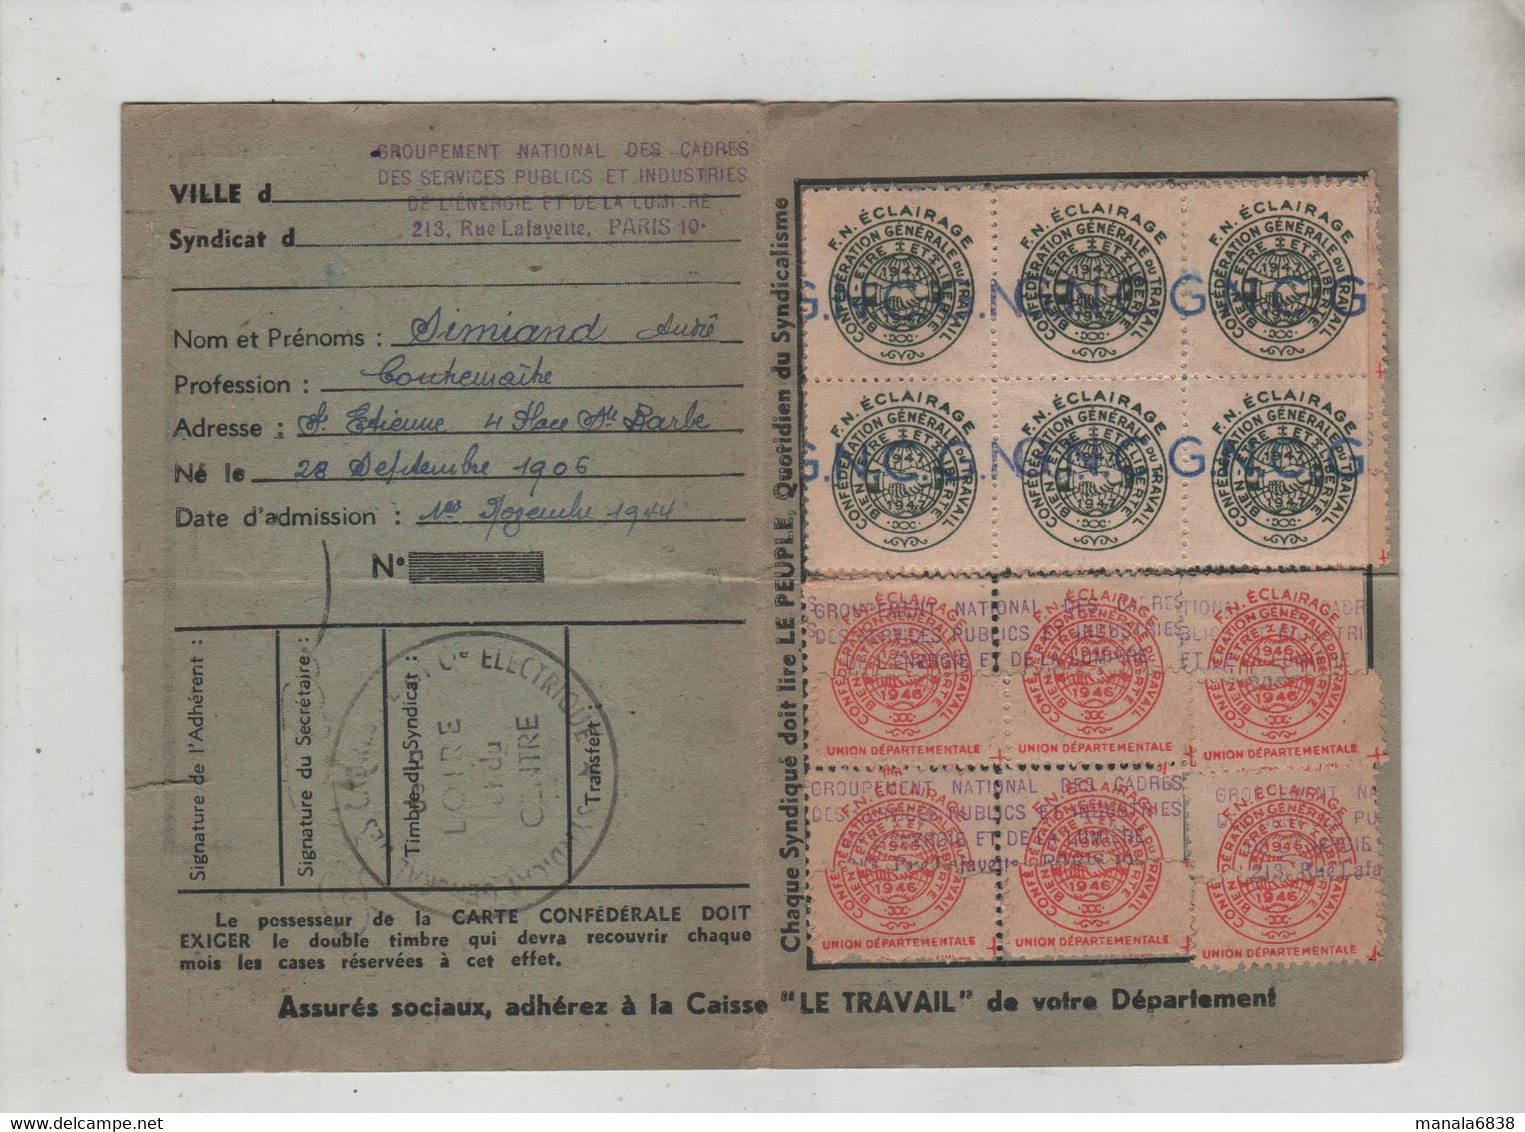 Carte Confédérale 1946 CGT Simiand Saint Etienne - Cartes De Membre